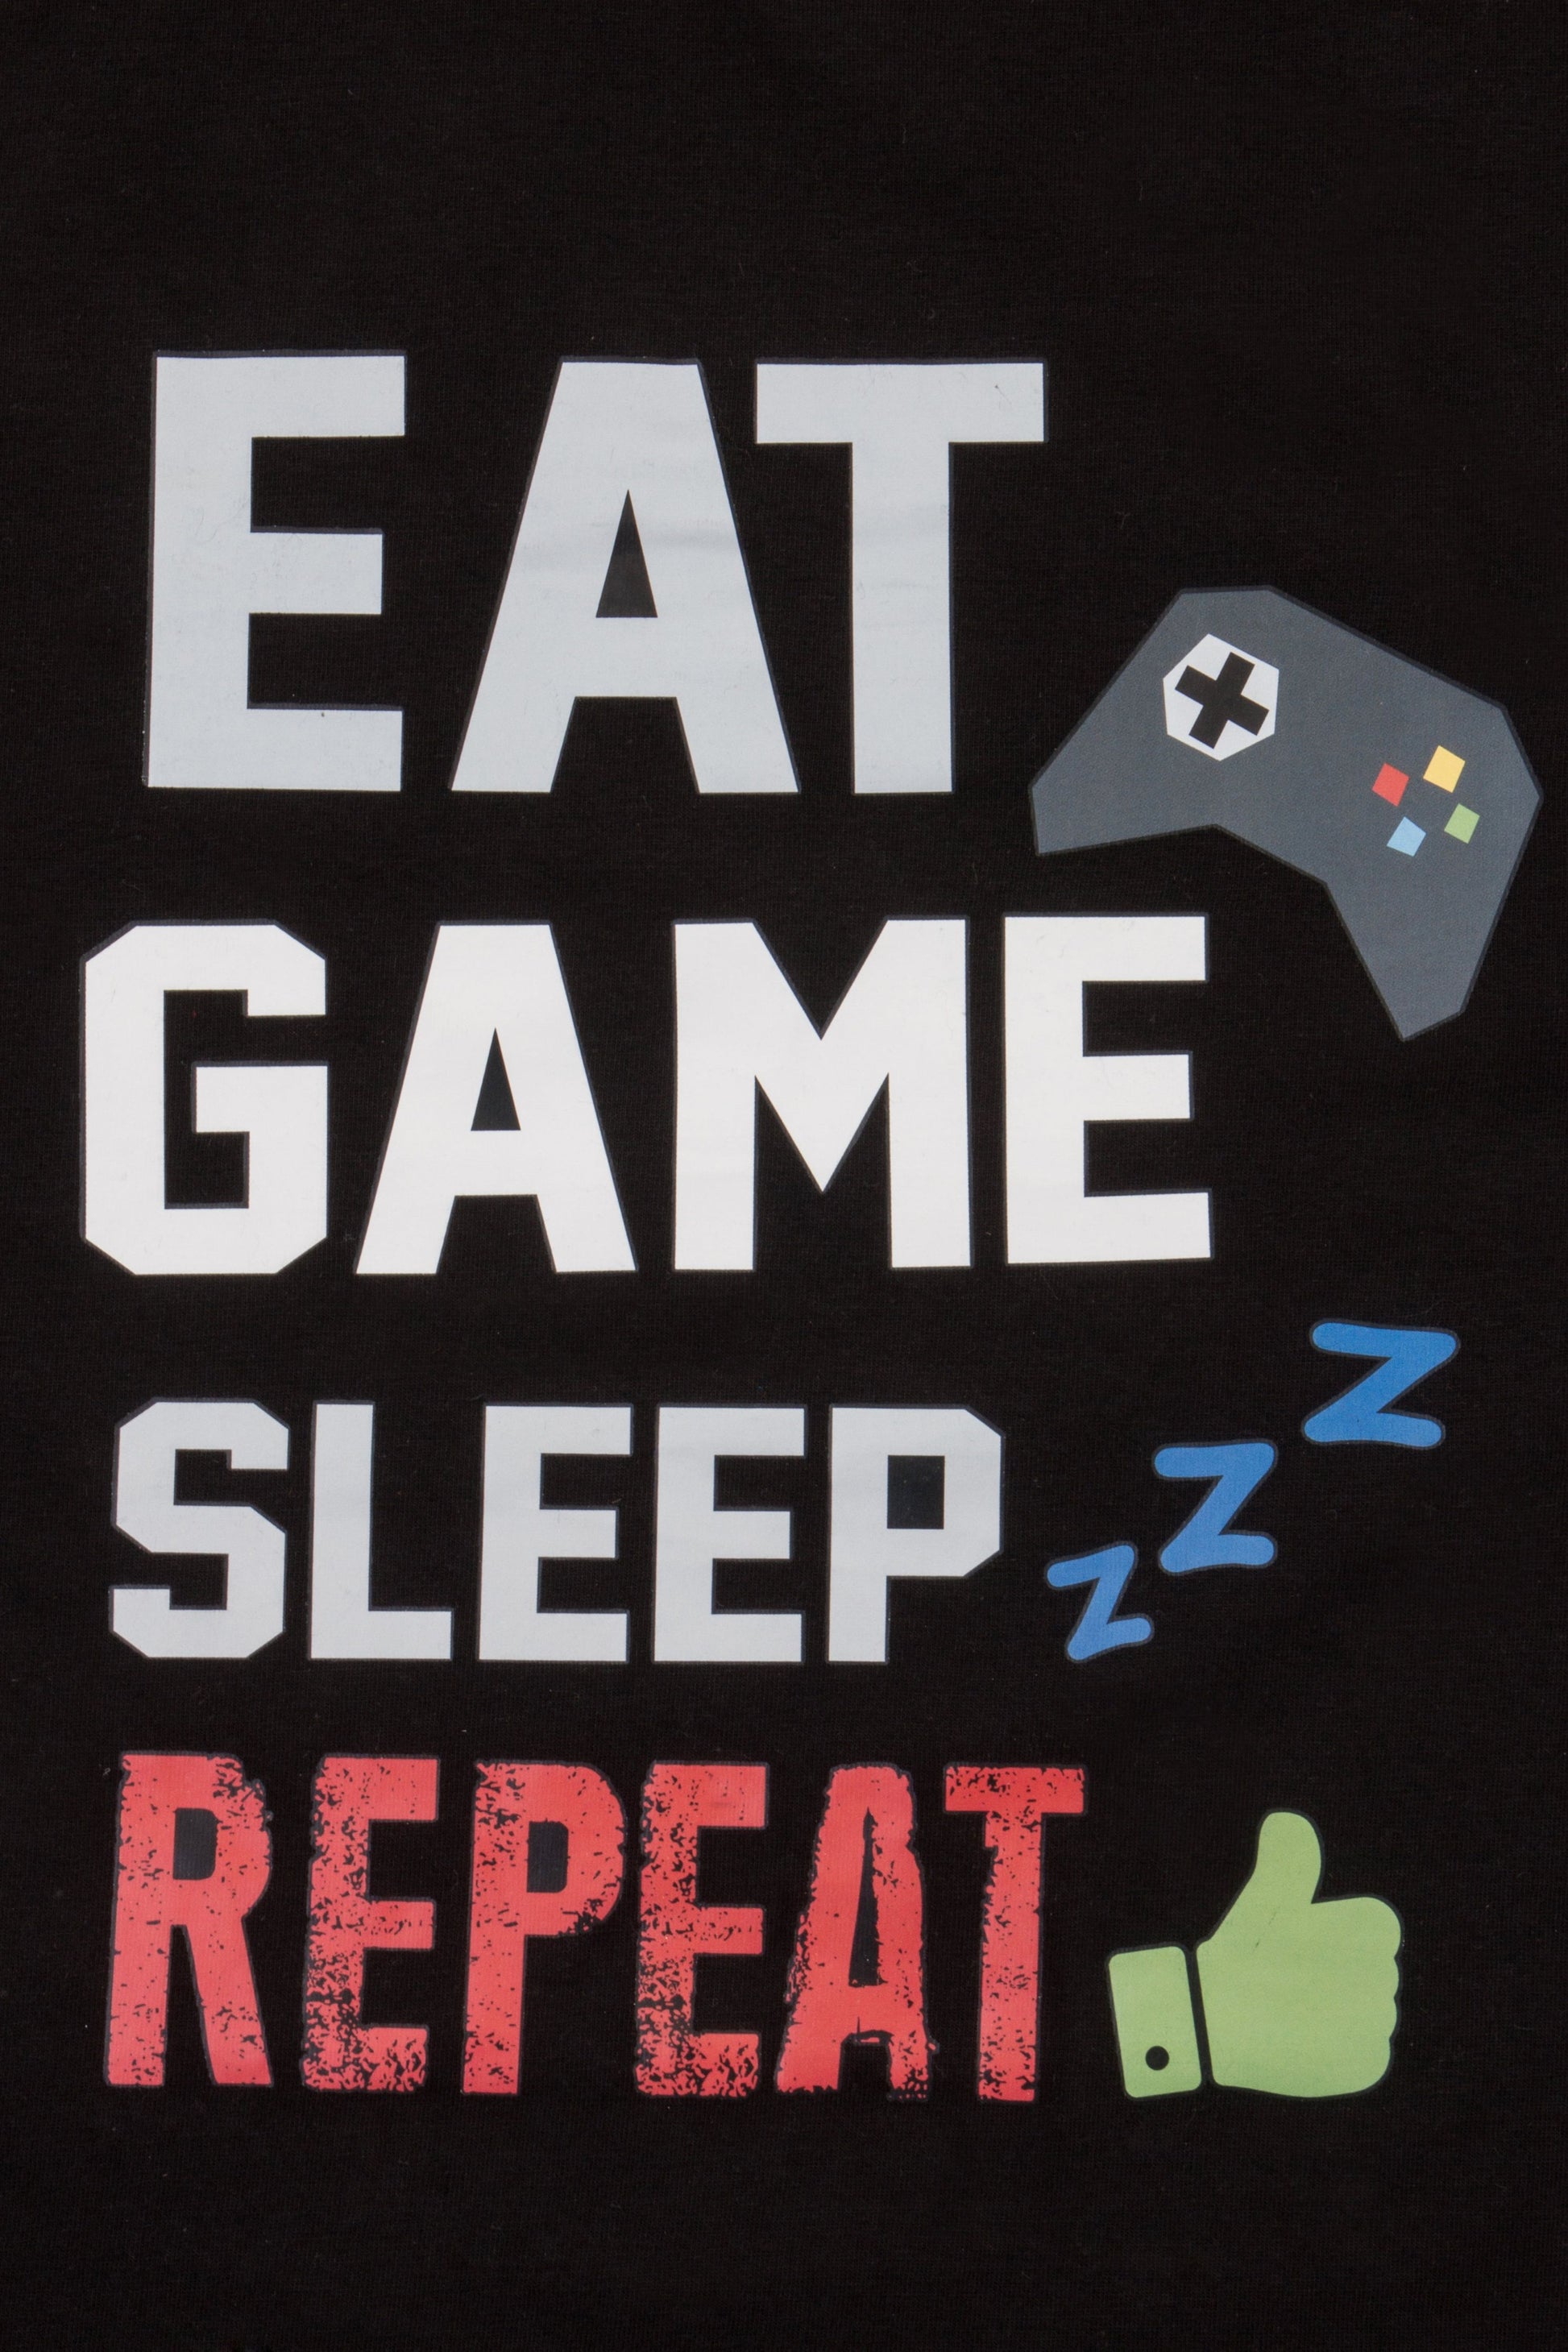 Boys Eat Game Sleep Short Pyjamas - Pyjamas.com